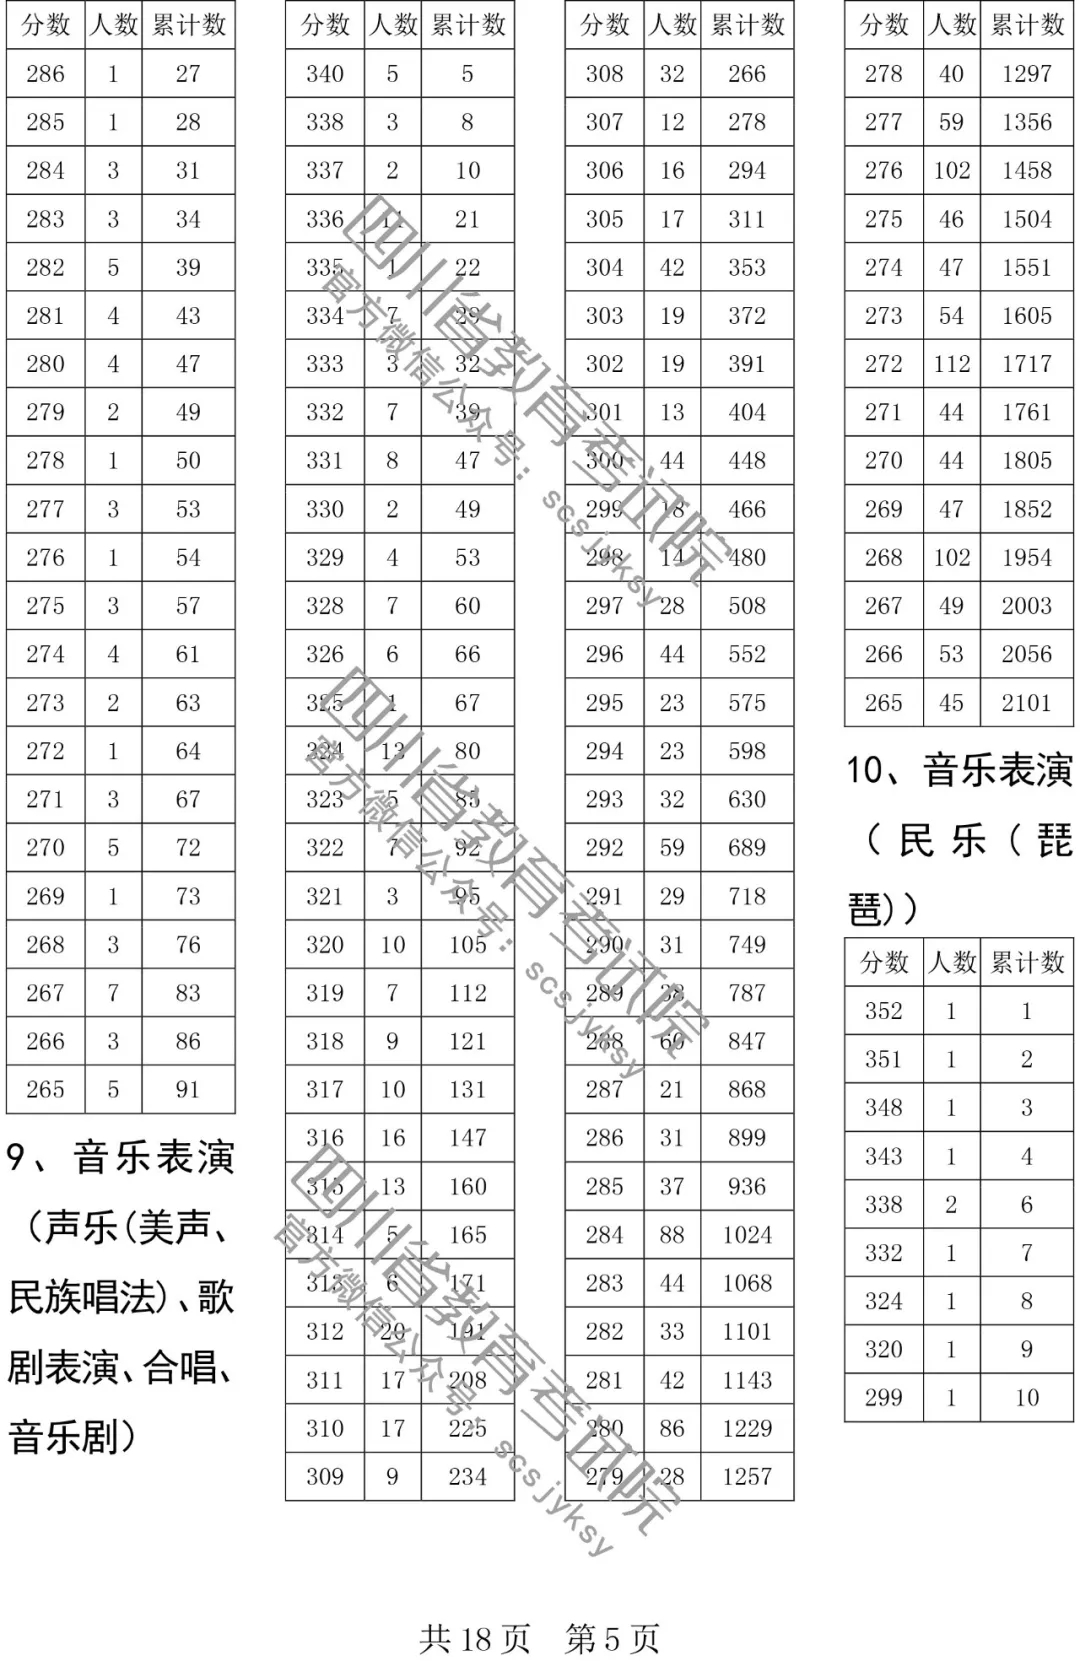 四川高考本科双上线考生人数一分段统计表